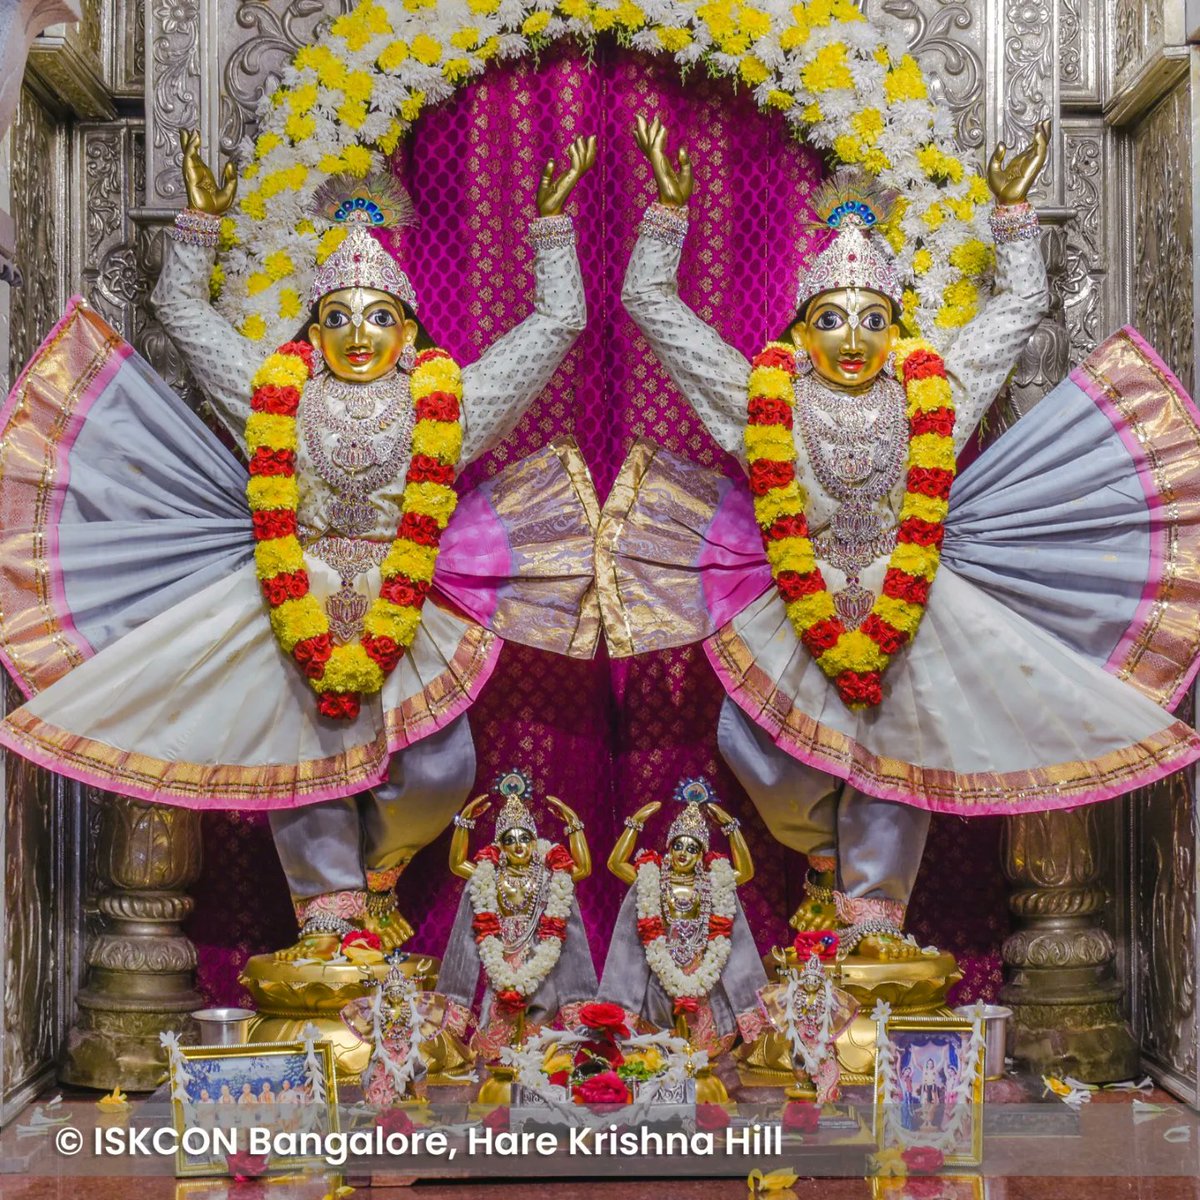 Daily darshan from ISKCON Bangalore temple - May 16, 2024.

#ISKCONBangalore #iskcon #DailyDarshan #temple #krishna #radhakrishna #trending #diwali #krishnalove #darshan #hkhill #vkhill #iskcontemple #thursdaymotivation #thursdayvibes #thursday #blessings #divine #spiritualgrowth